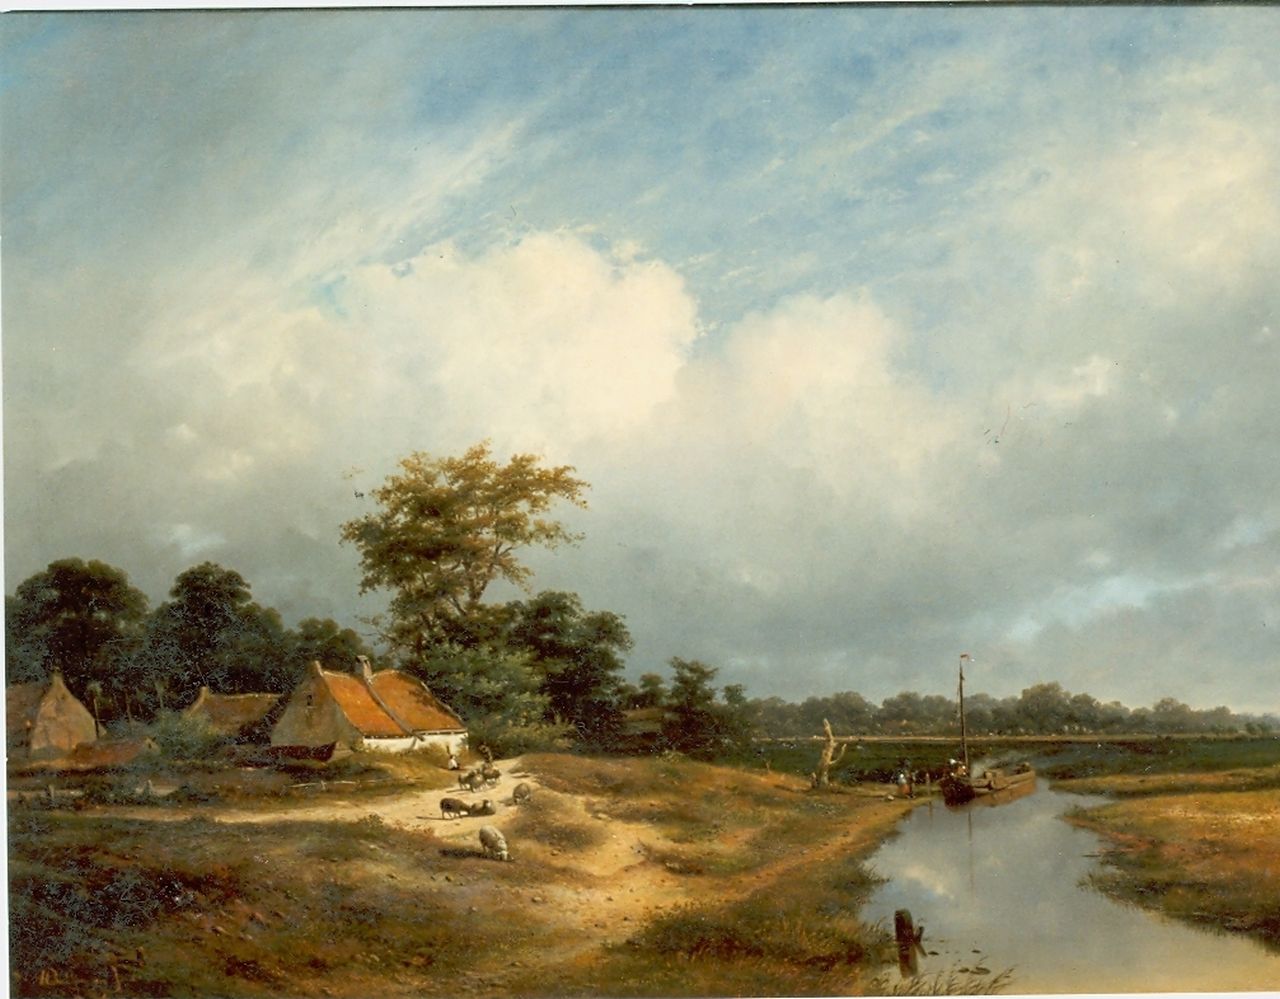 Sande Bakhuyzen H. van de | Hendrikus van de Sande Bakhuyzen, A shepherd and his flock by a farm, Öl auf Leinwand 74,2 x 100,0 cm, signed l.l. und dated 1852